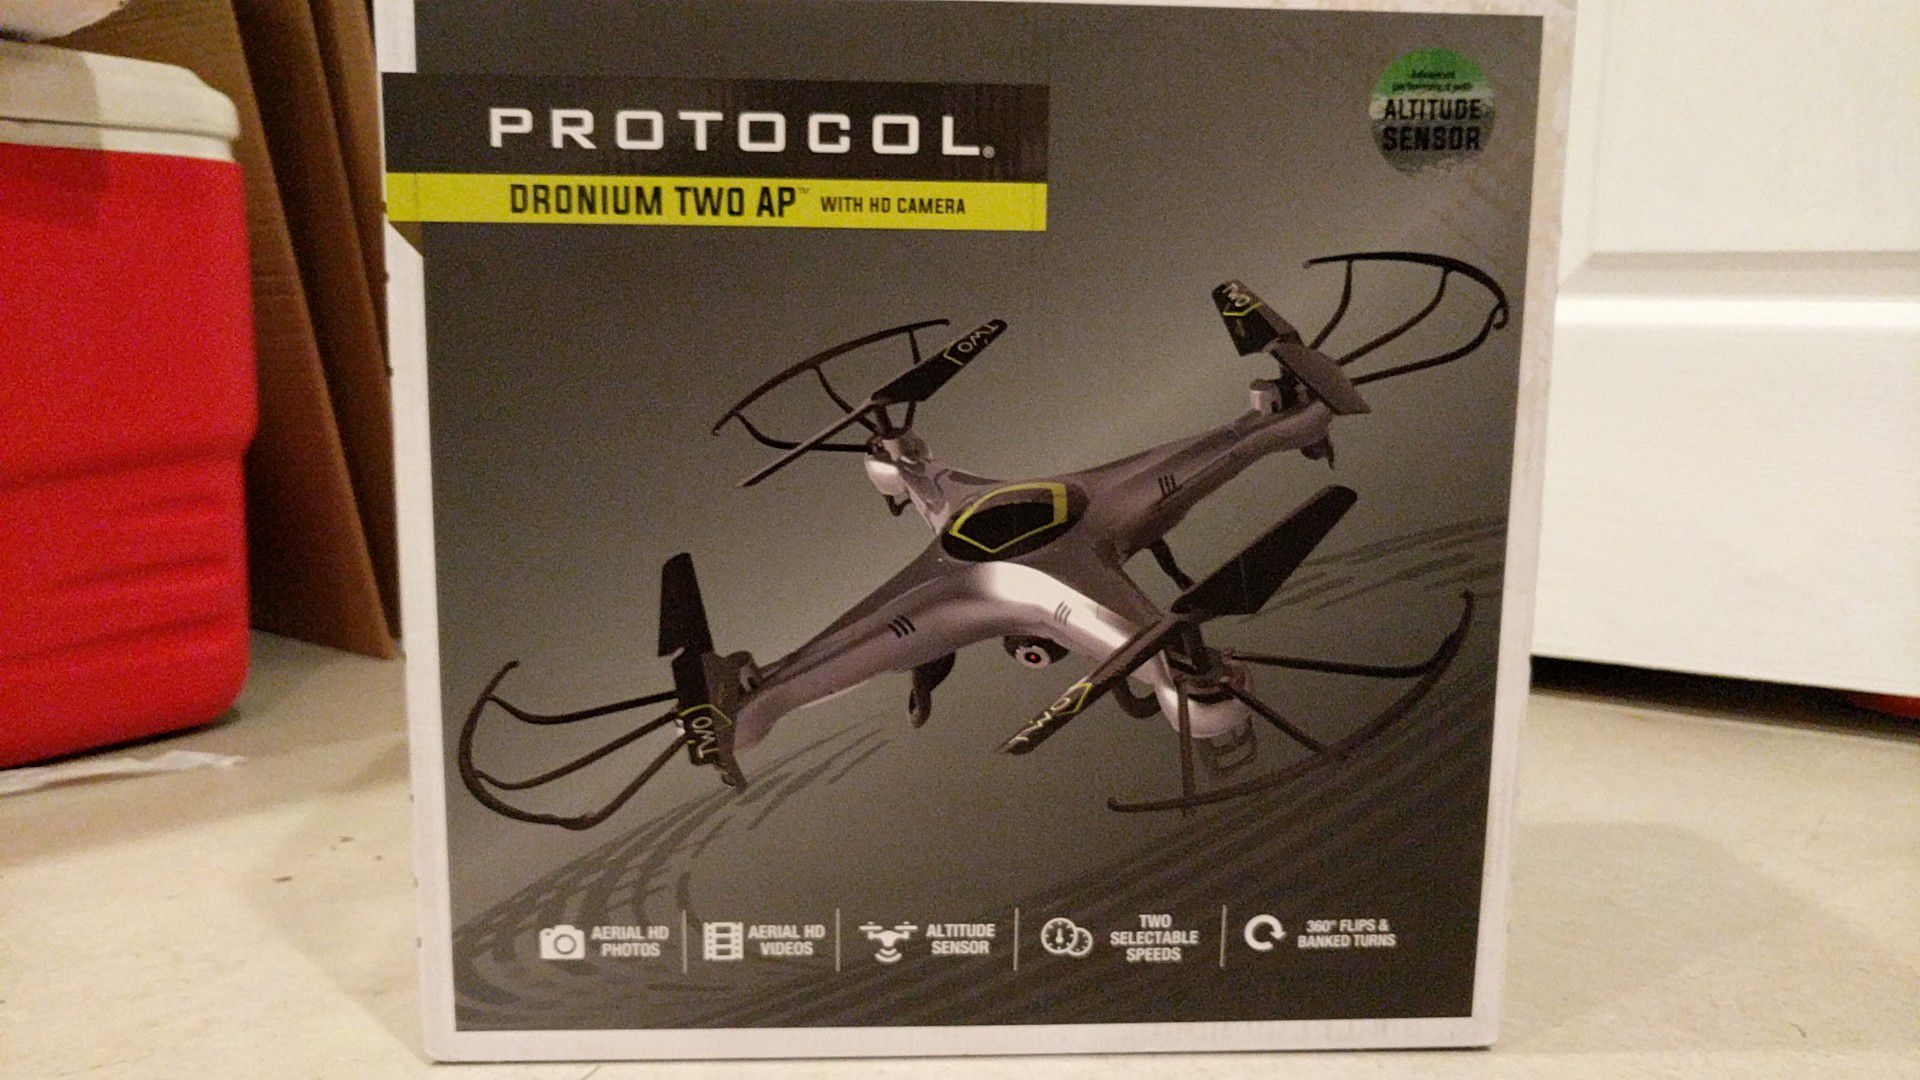 Protocol drone